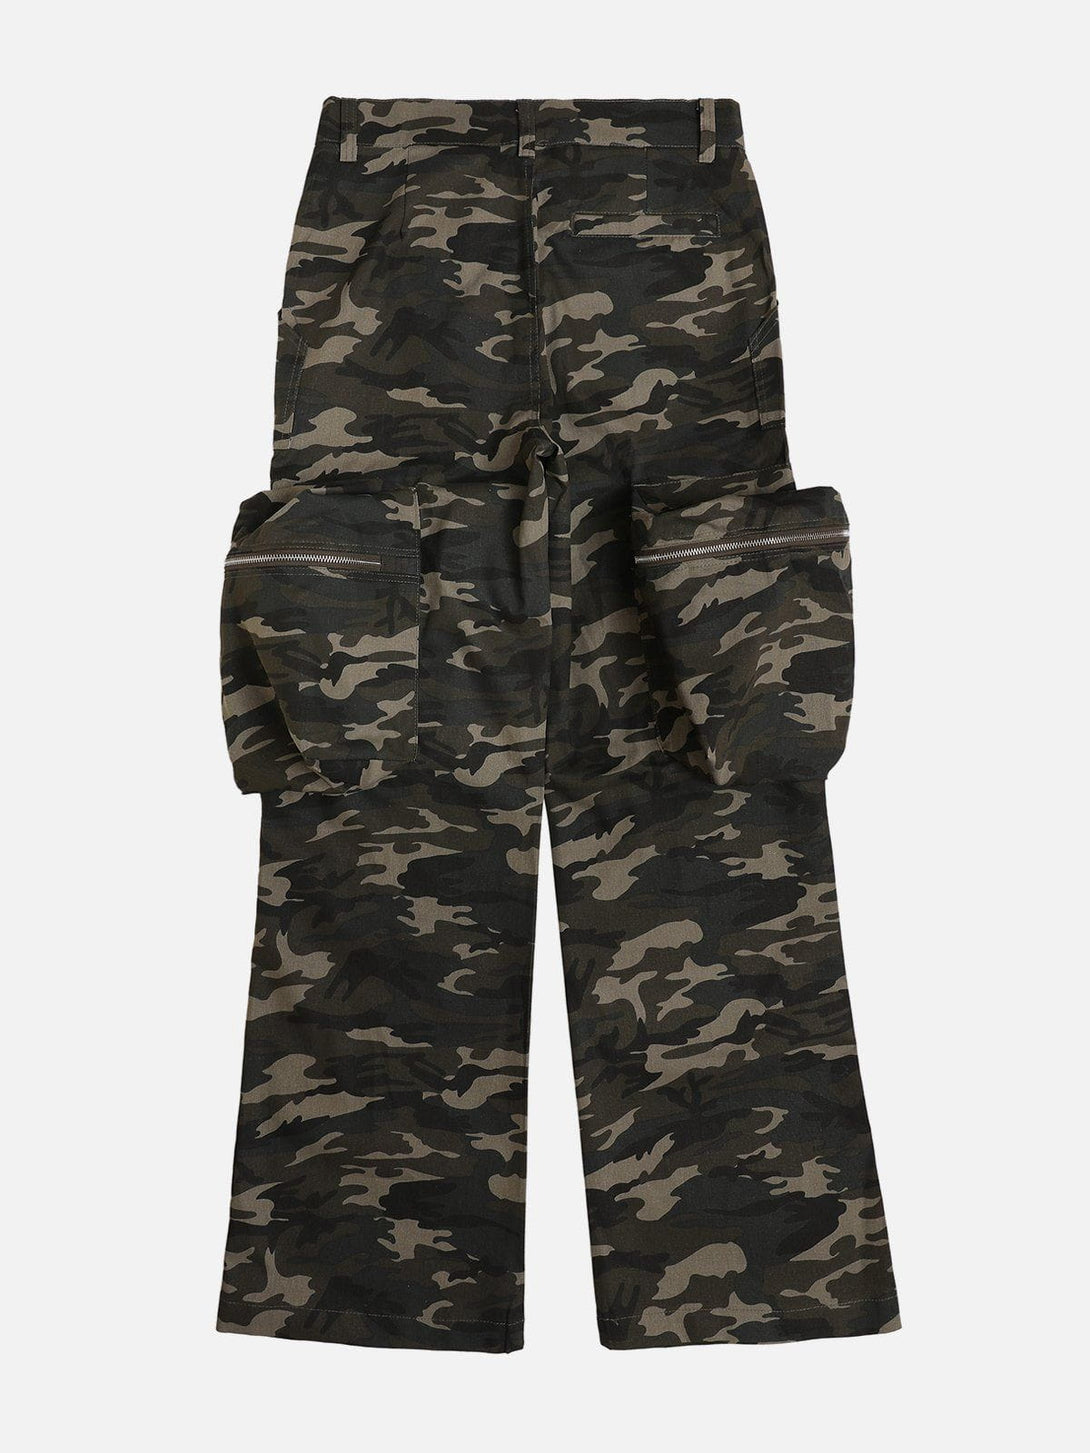 Levefly - Camouflage Large Pocket Cargo Pants - Streetwear Fashion - levefly.com